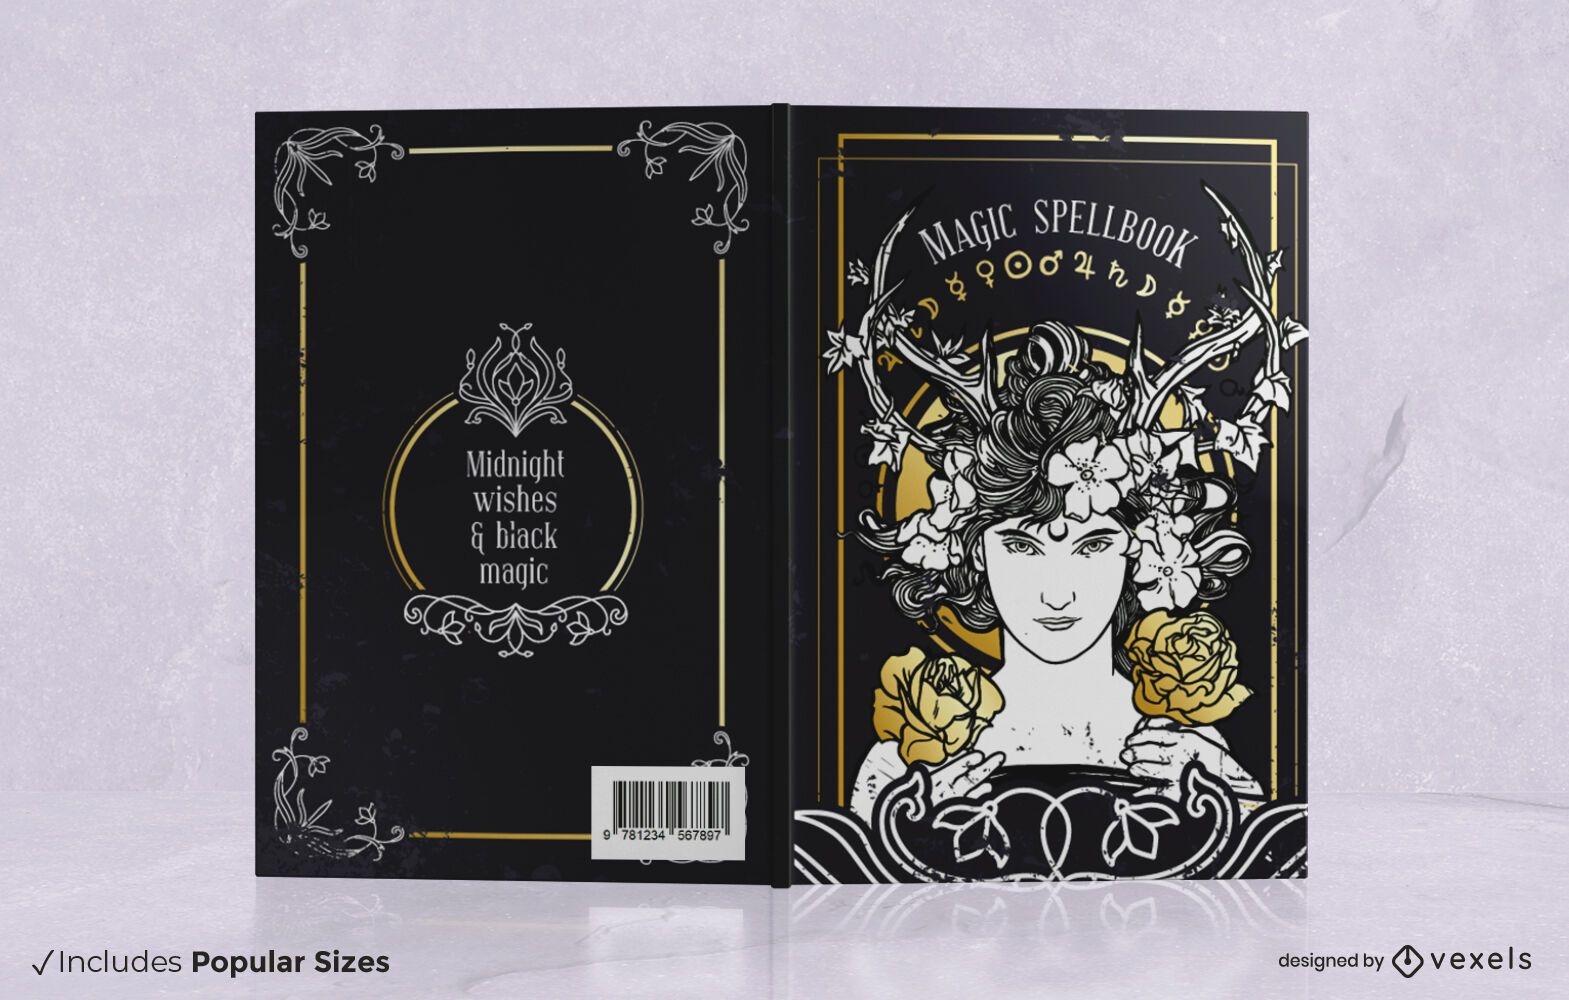 Magic spellbook cover design